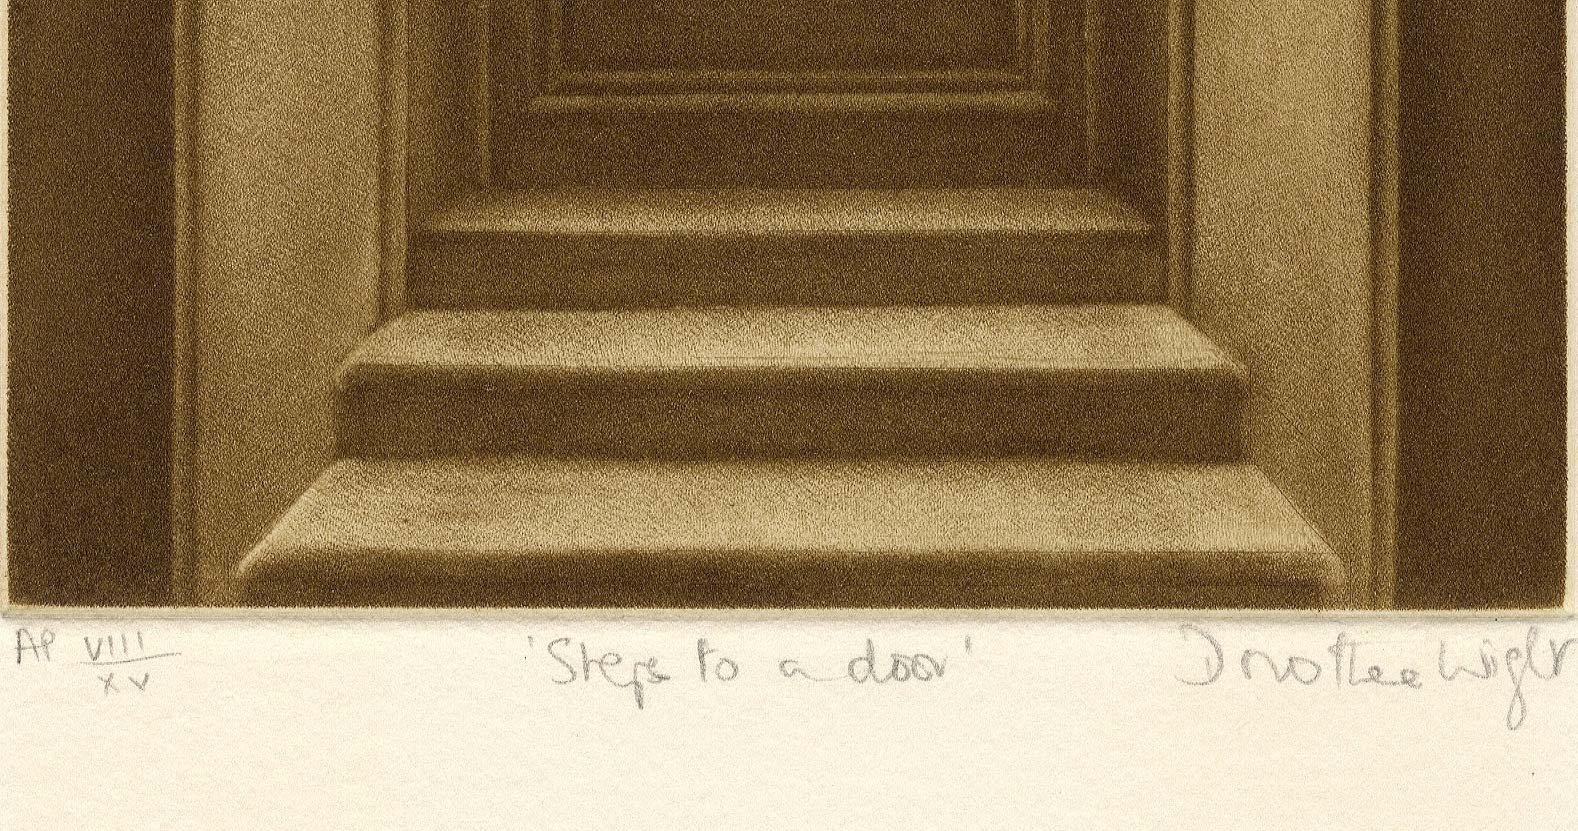 Steps to a Door (landscape seen through door windows) - Print by Dorothea Wight